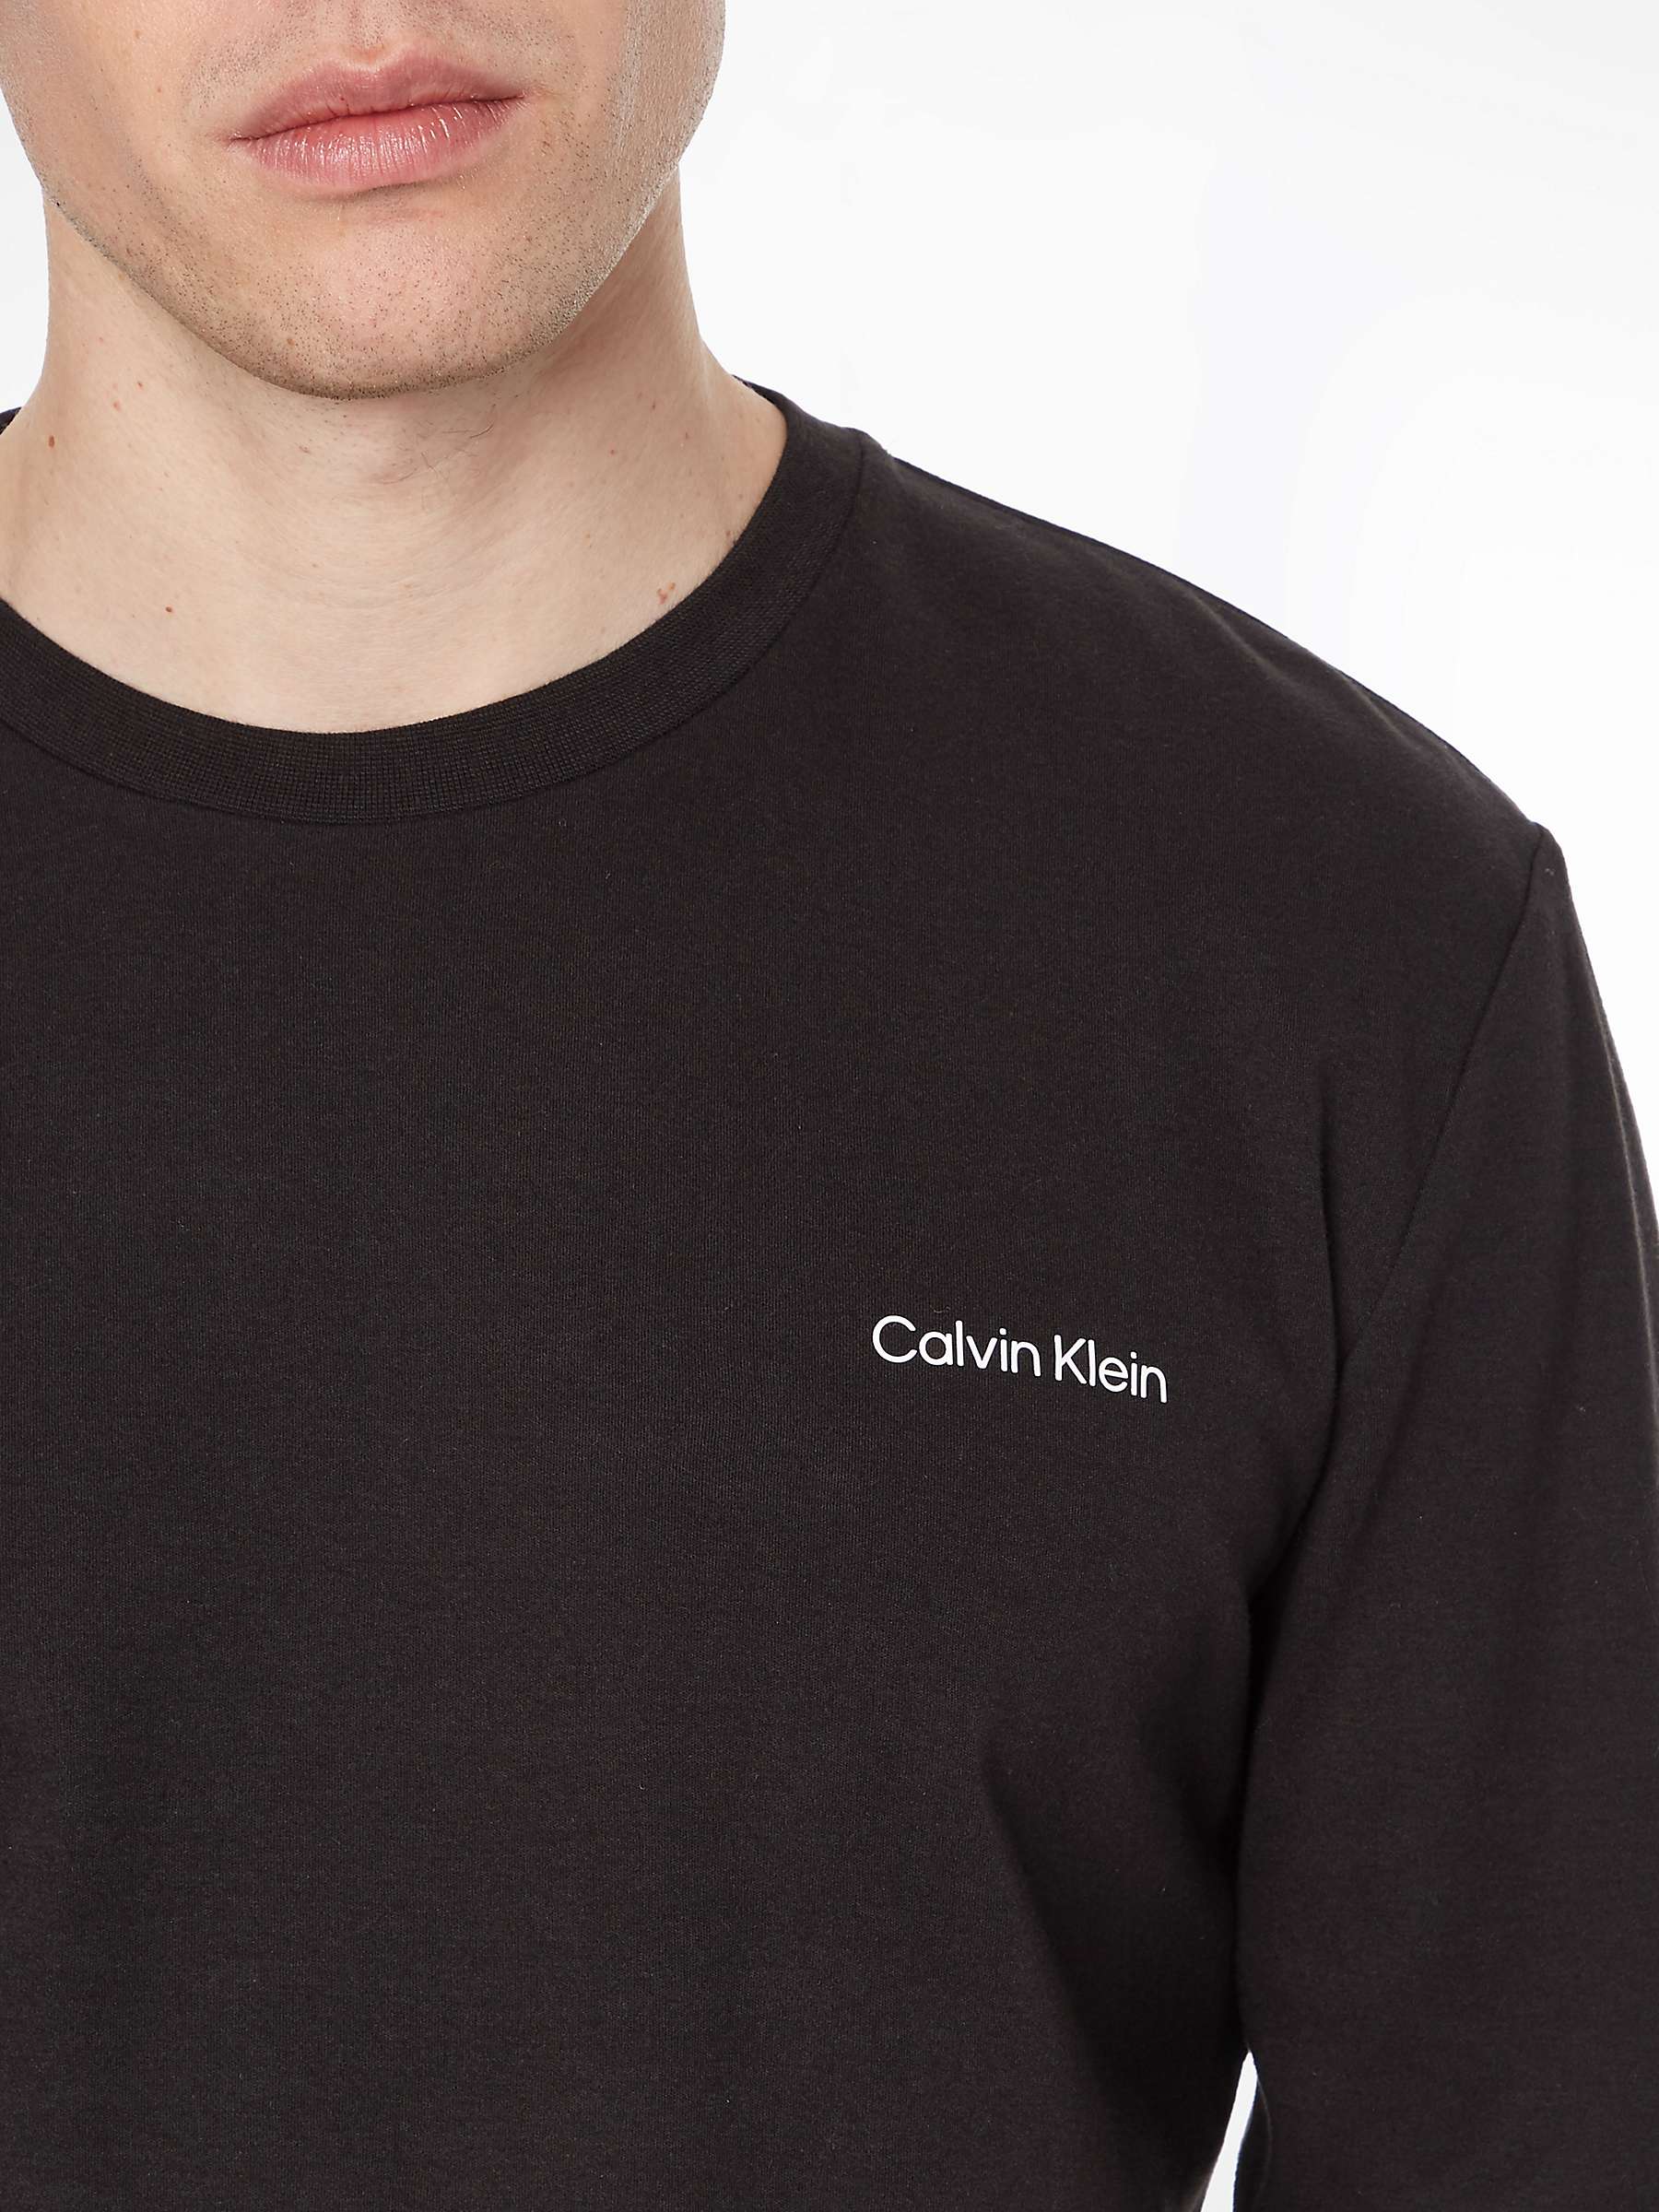 Calvin Klein Interlocking Long Sleeve T-Shirt, CK Black at John Lewis ...